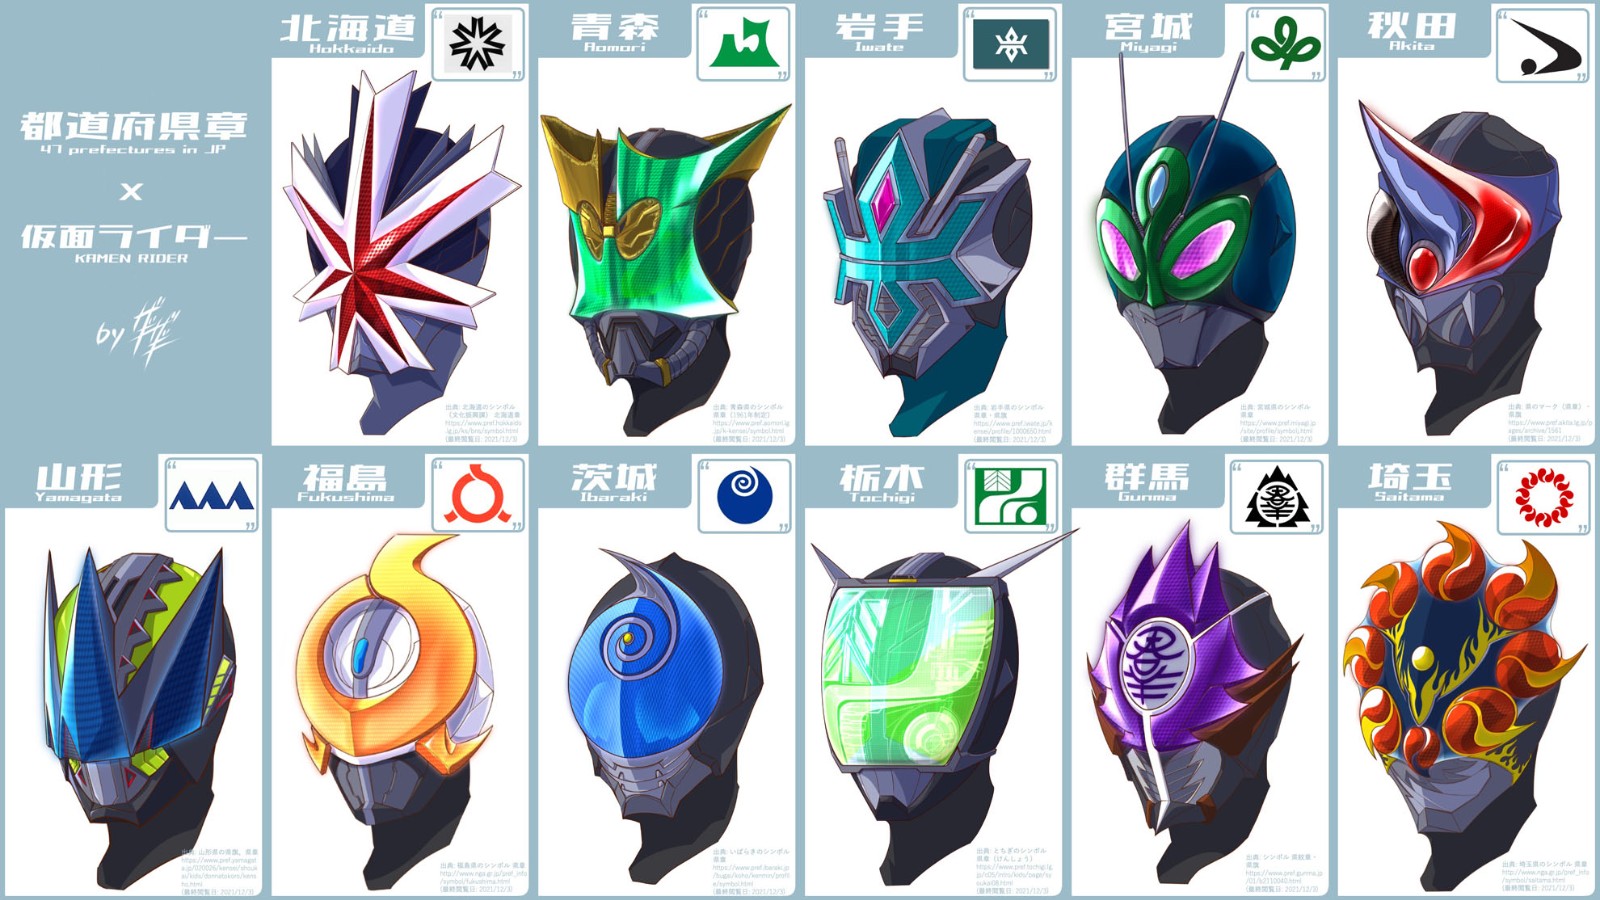 高玩打造日本47行政区《假面骑士》头盔版 各具特色带感